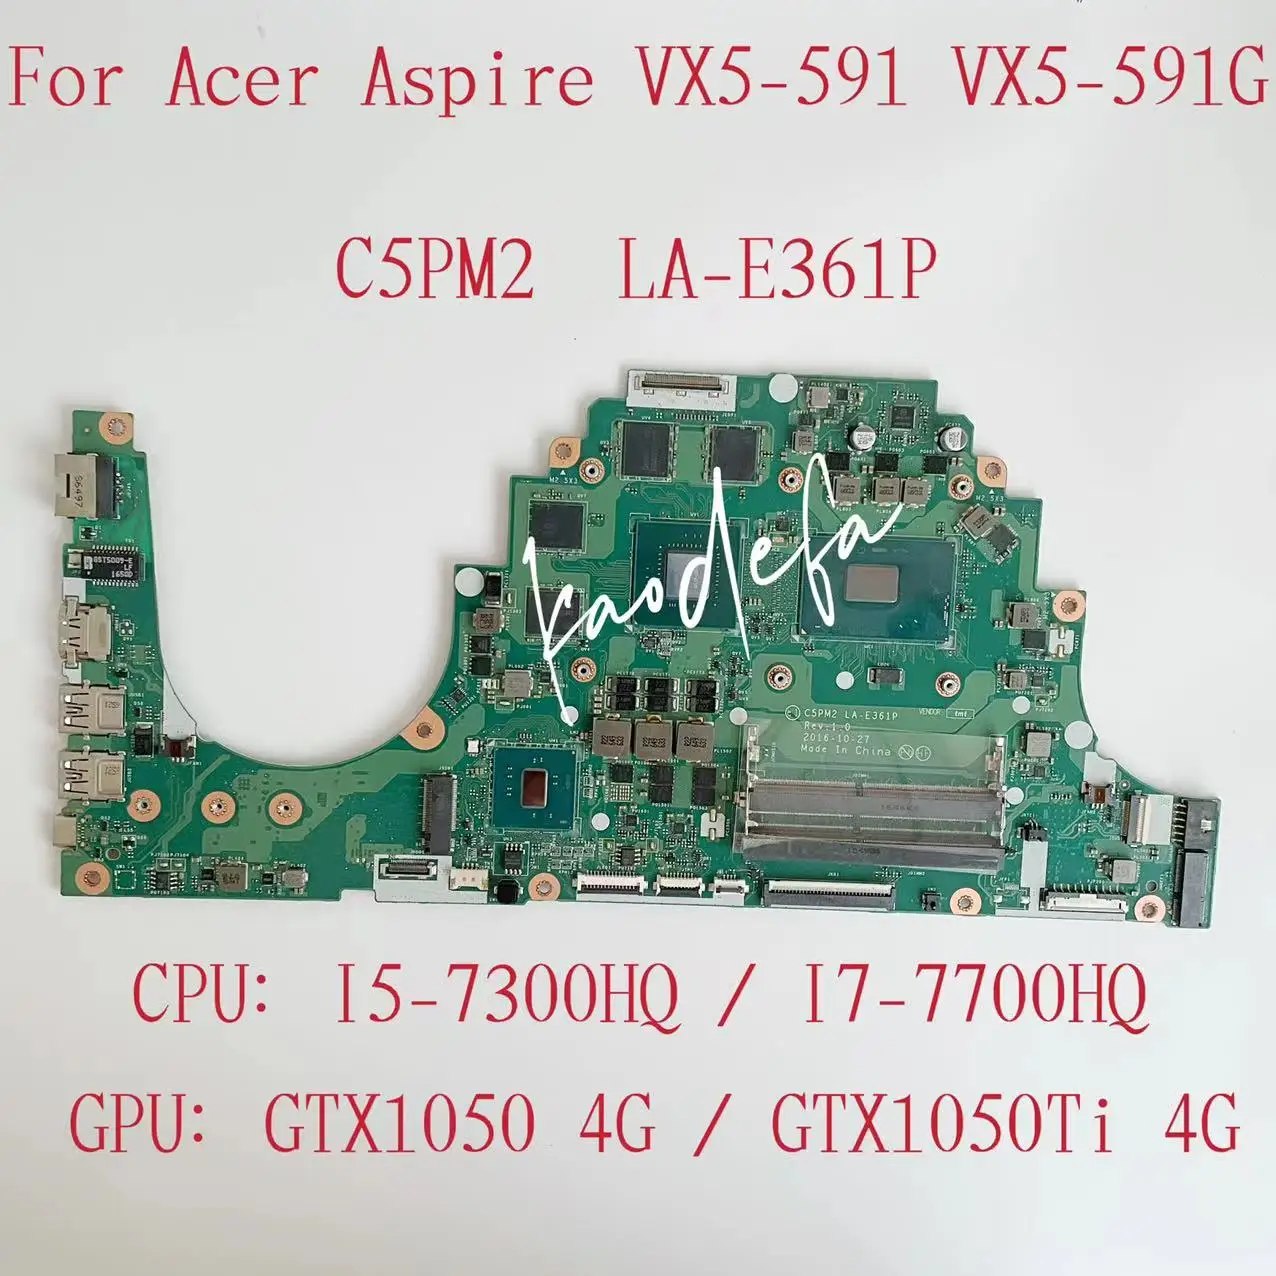 C5PM2 LA-E361P Mainboard per Acer Aspire VX5-591 Laptop Motherboard CPU I5-7300HQ / I7-7700HQ GPU: GTX1050 / 1050Ti 4G Test OK OK